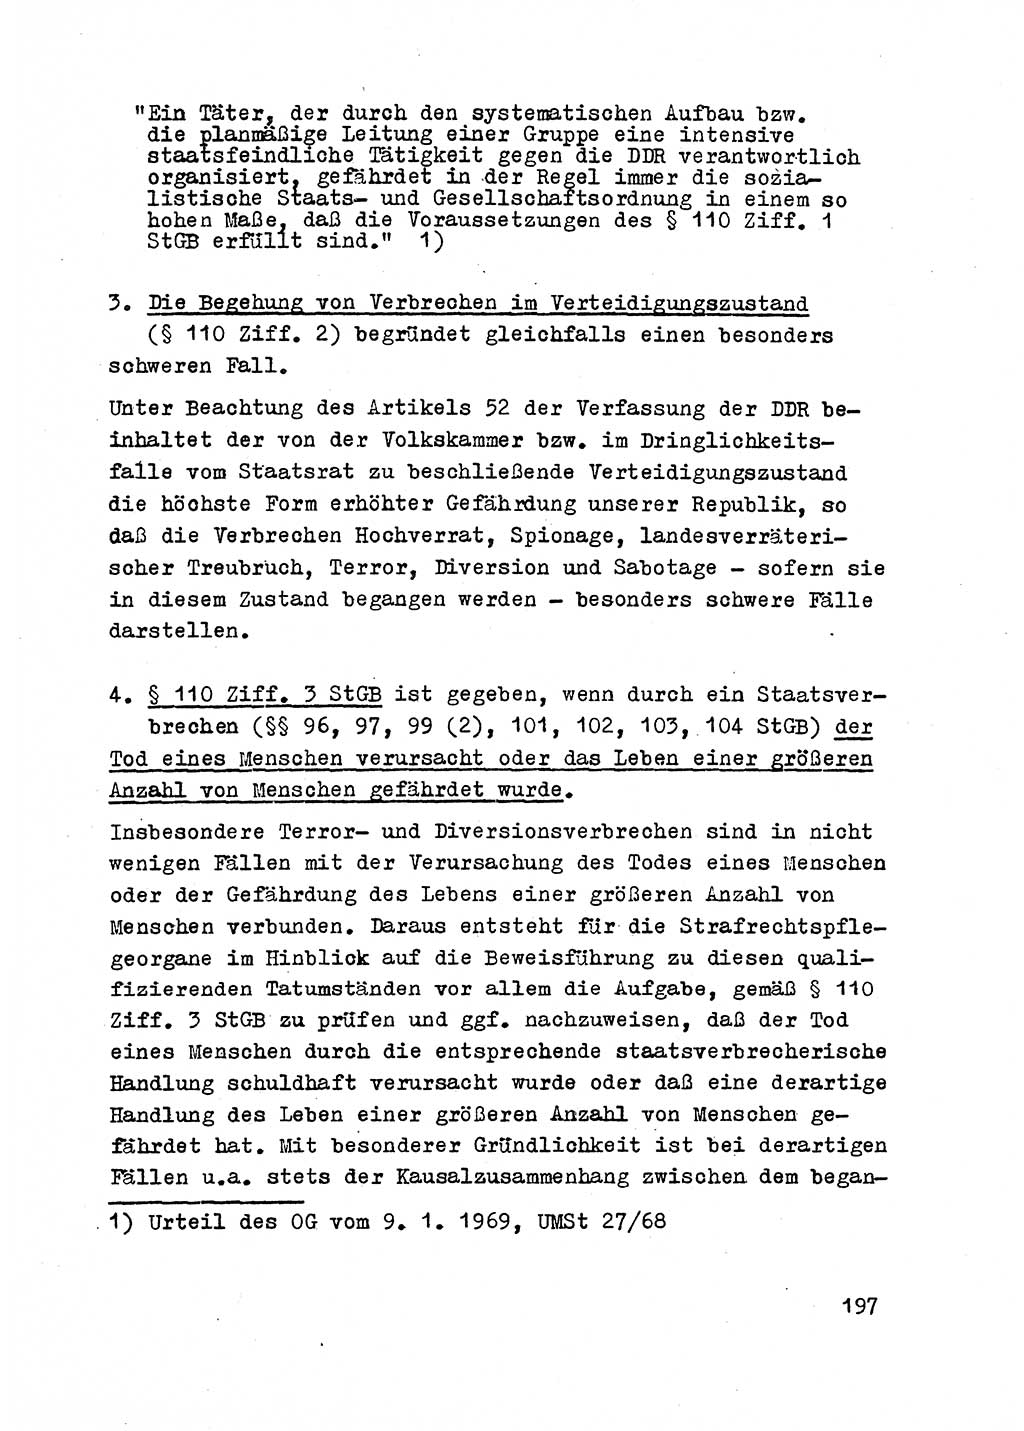 Strafrecht der DDR (Deutsche Demokratische Republik), Besonderer Teil, Lehrmaterial, Heft 2 1969, Seite 197 (Strafr. DDR BT Lehrmat. H. 2 1969, S. 197)